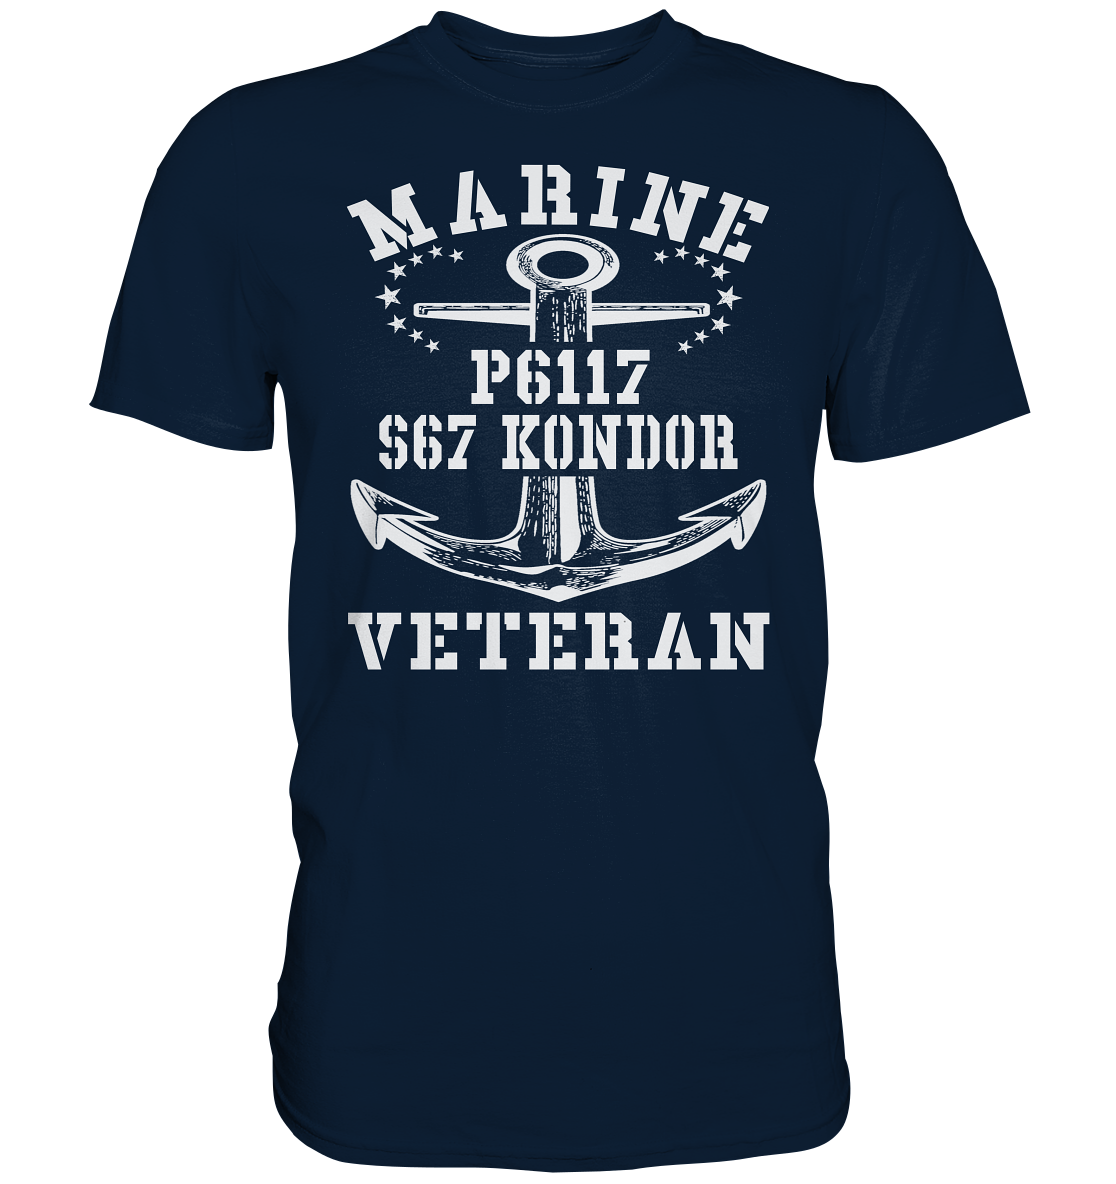 FK-Schnellboot P6117 KONDOR Marine Veteran - Premium Shirt